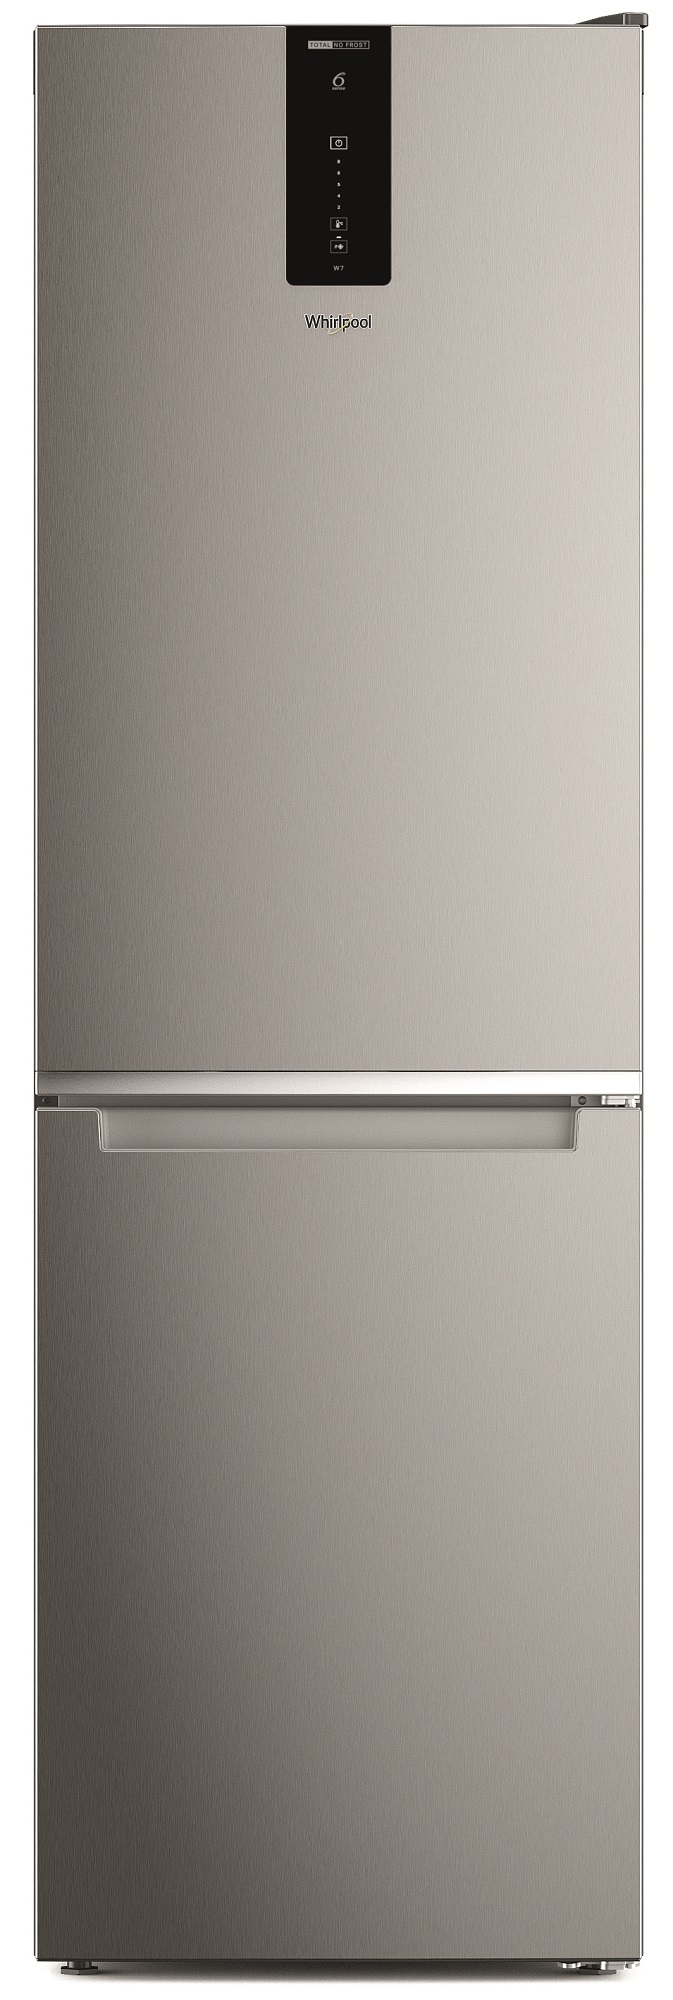 Холодильник WHIRLPOOL W7X 81O OX 0 в Киеве